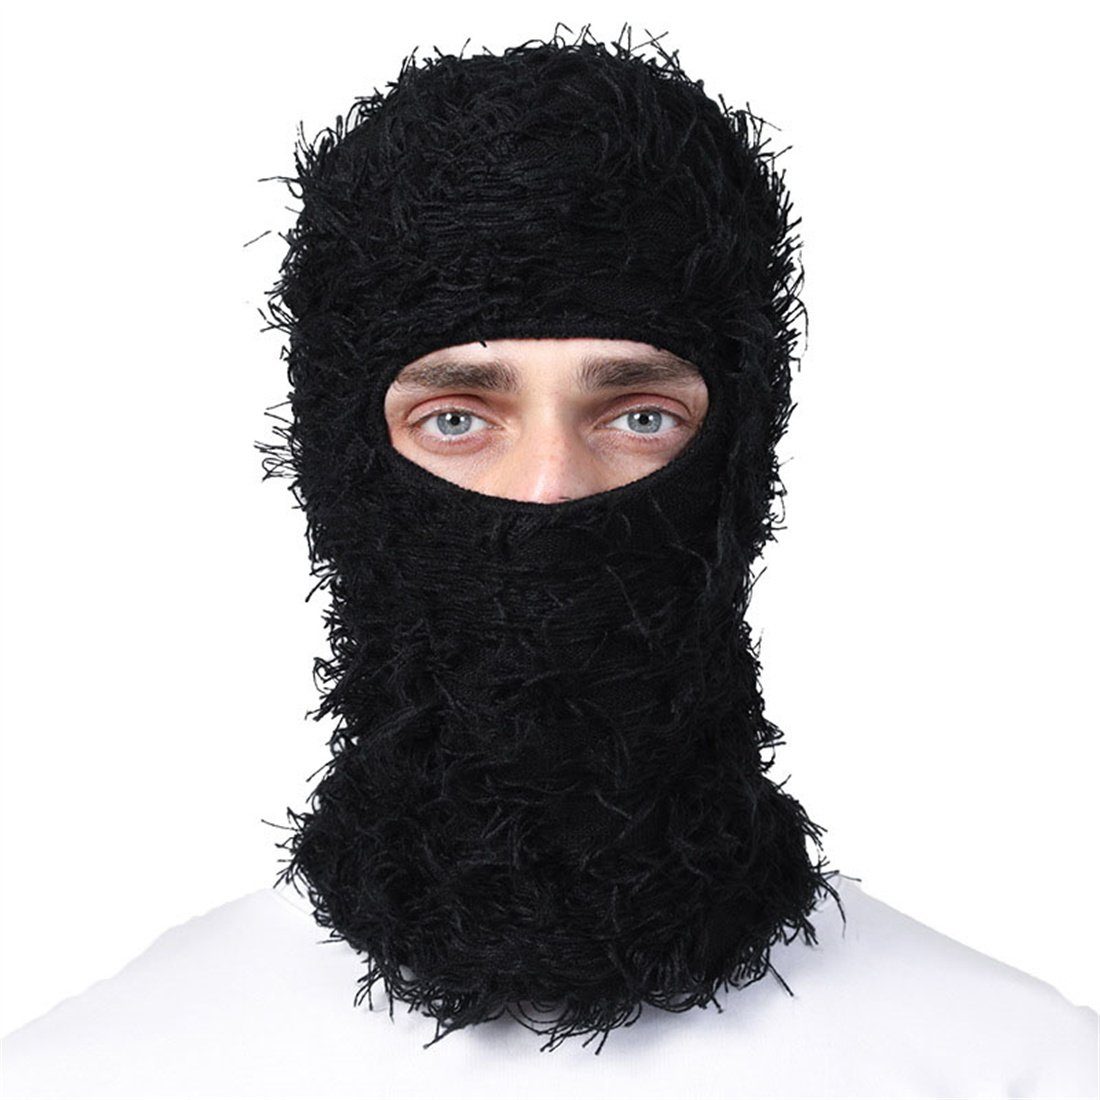 DÖRÖY Sturmhaube Winterliche warme Kopfbedeckungen, Balaclava-Mützen, Party-Masken Schwarz